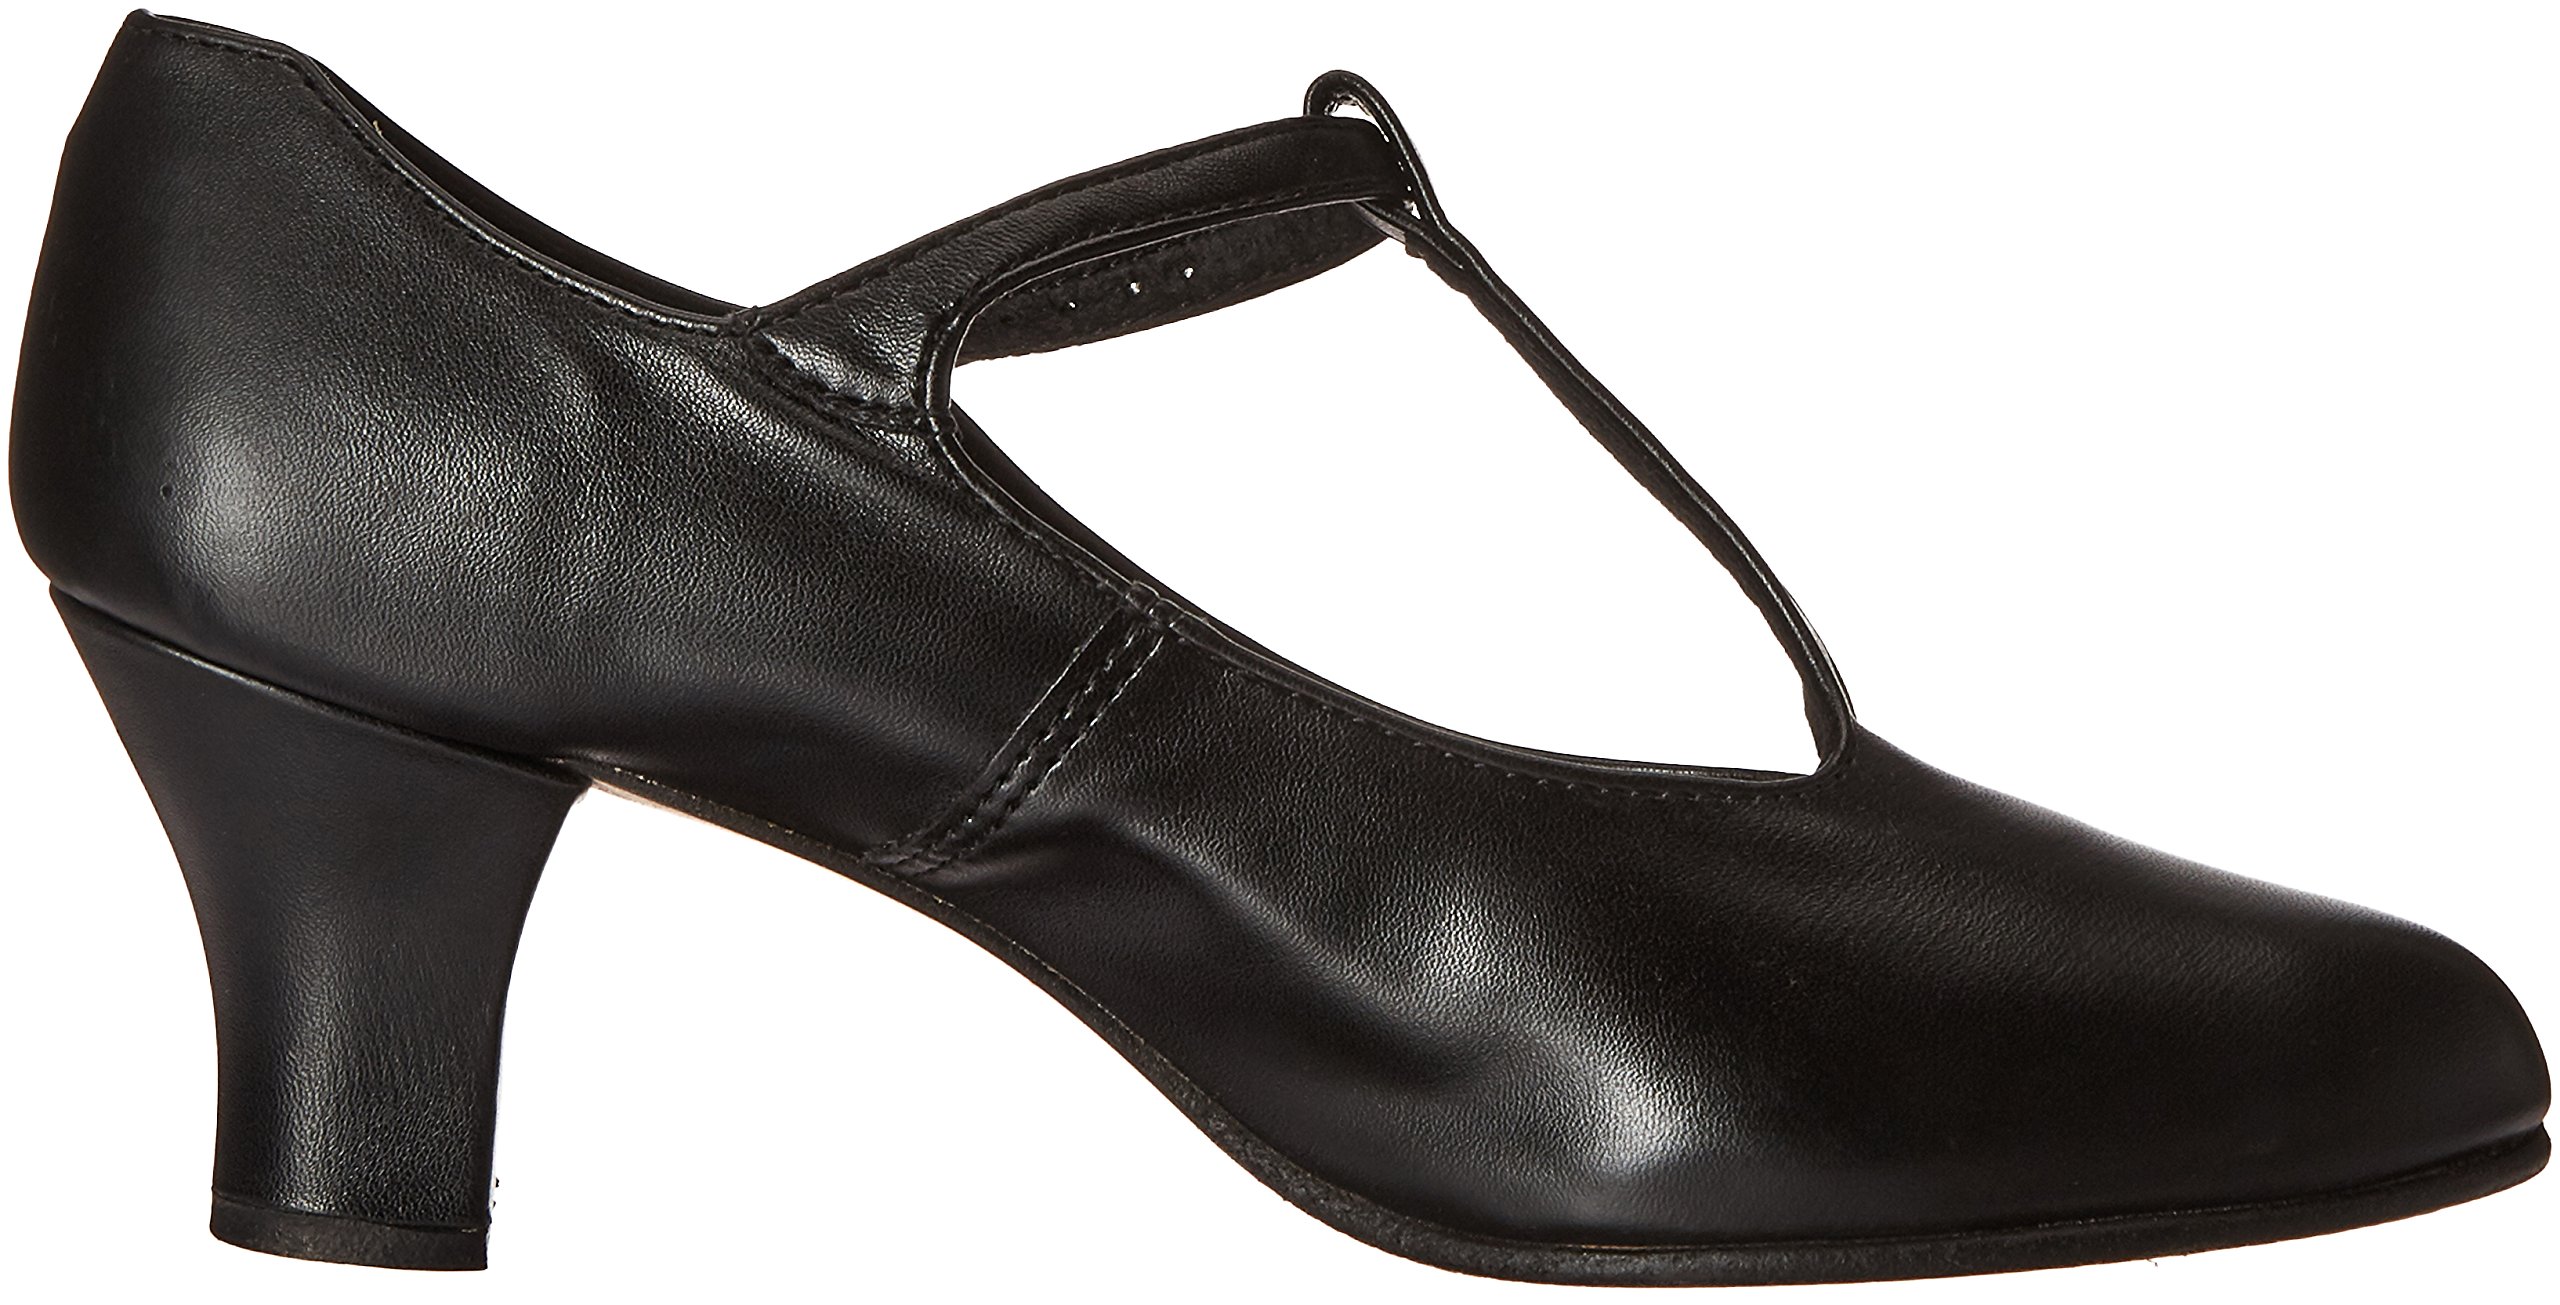 Capezio Jr. Footlight T-Strap Black Dance Shoe - 4.5 M US